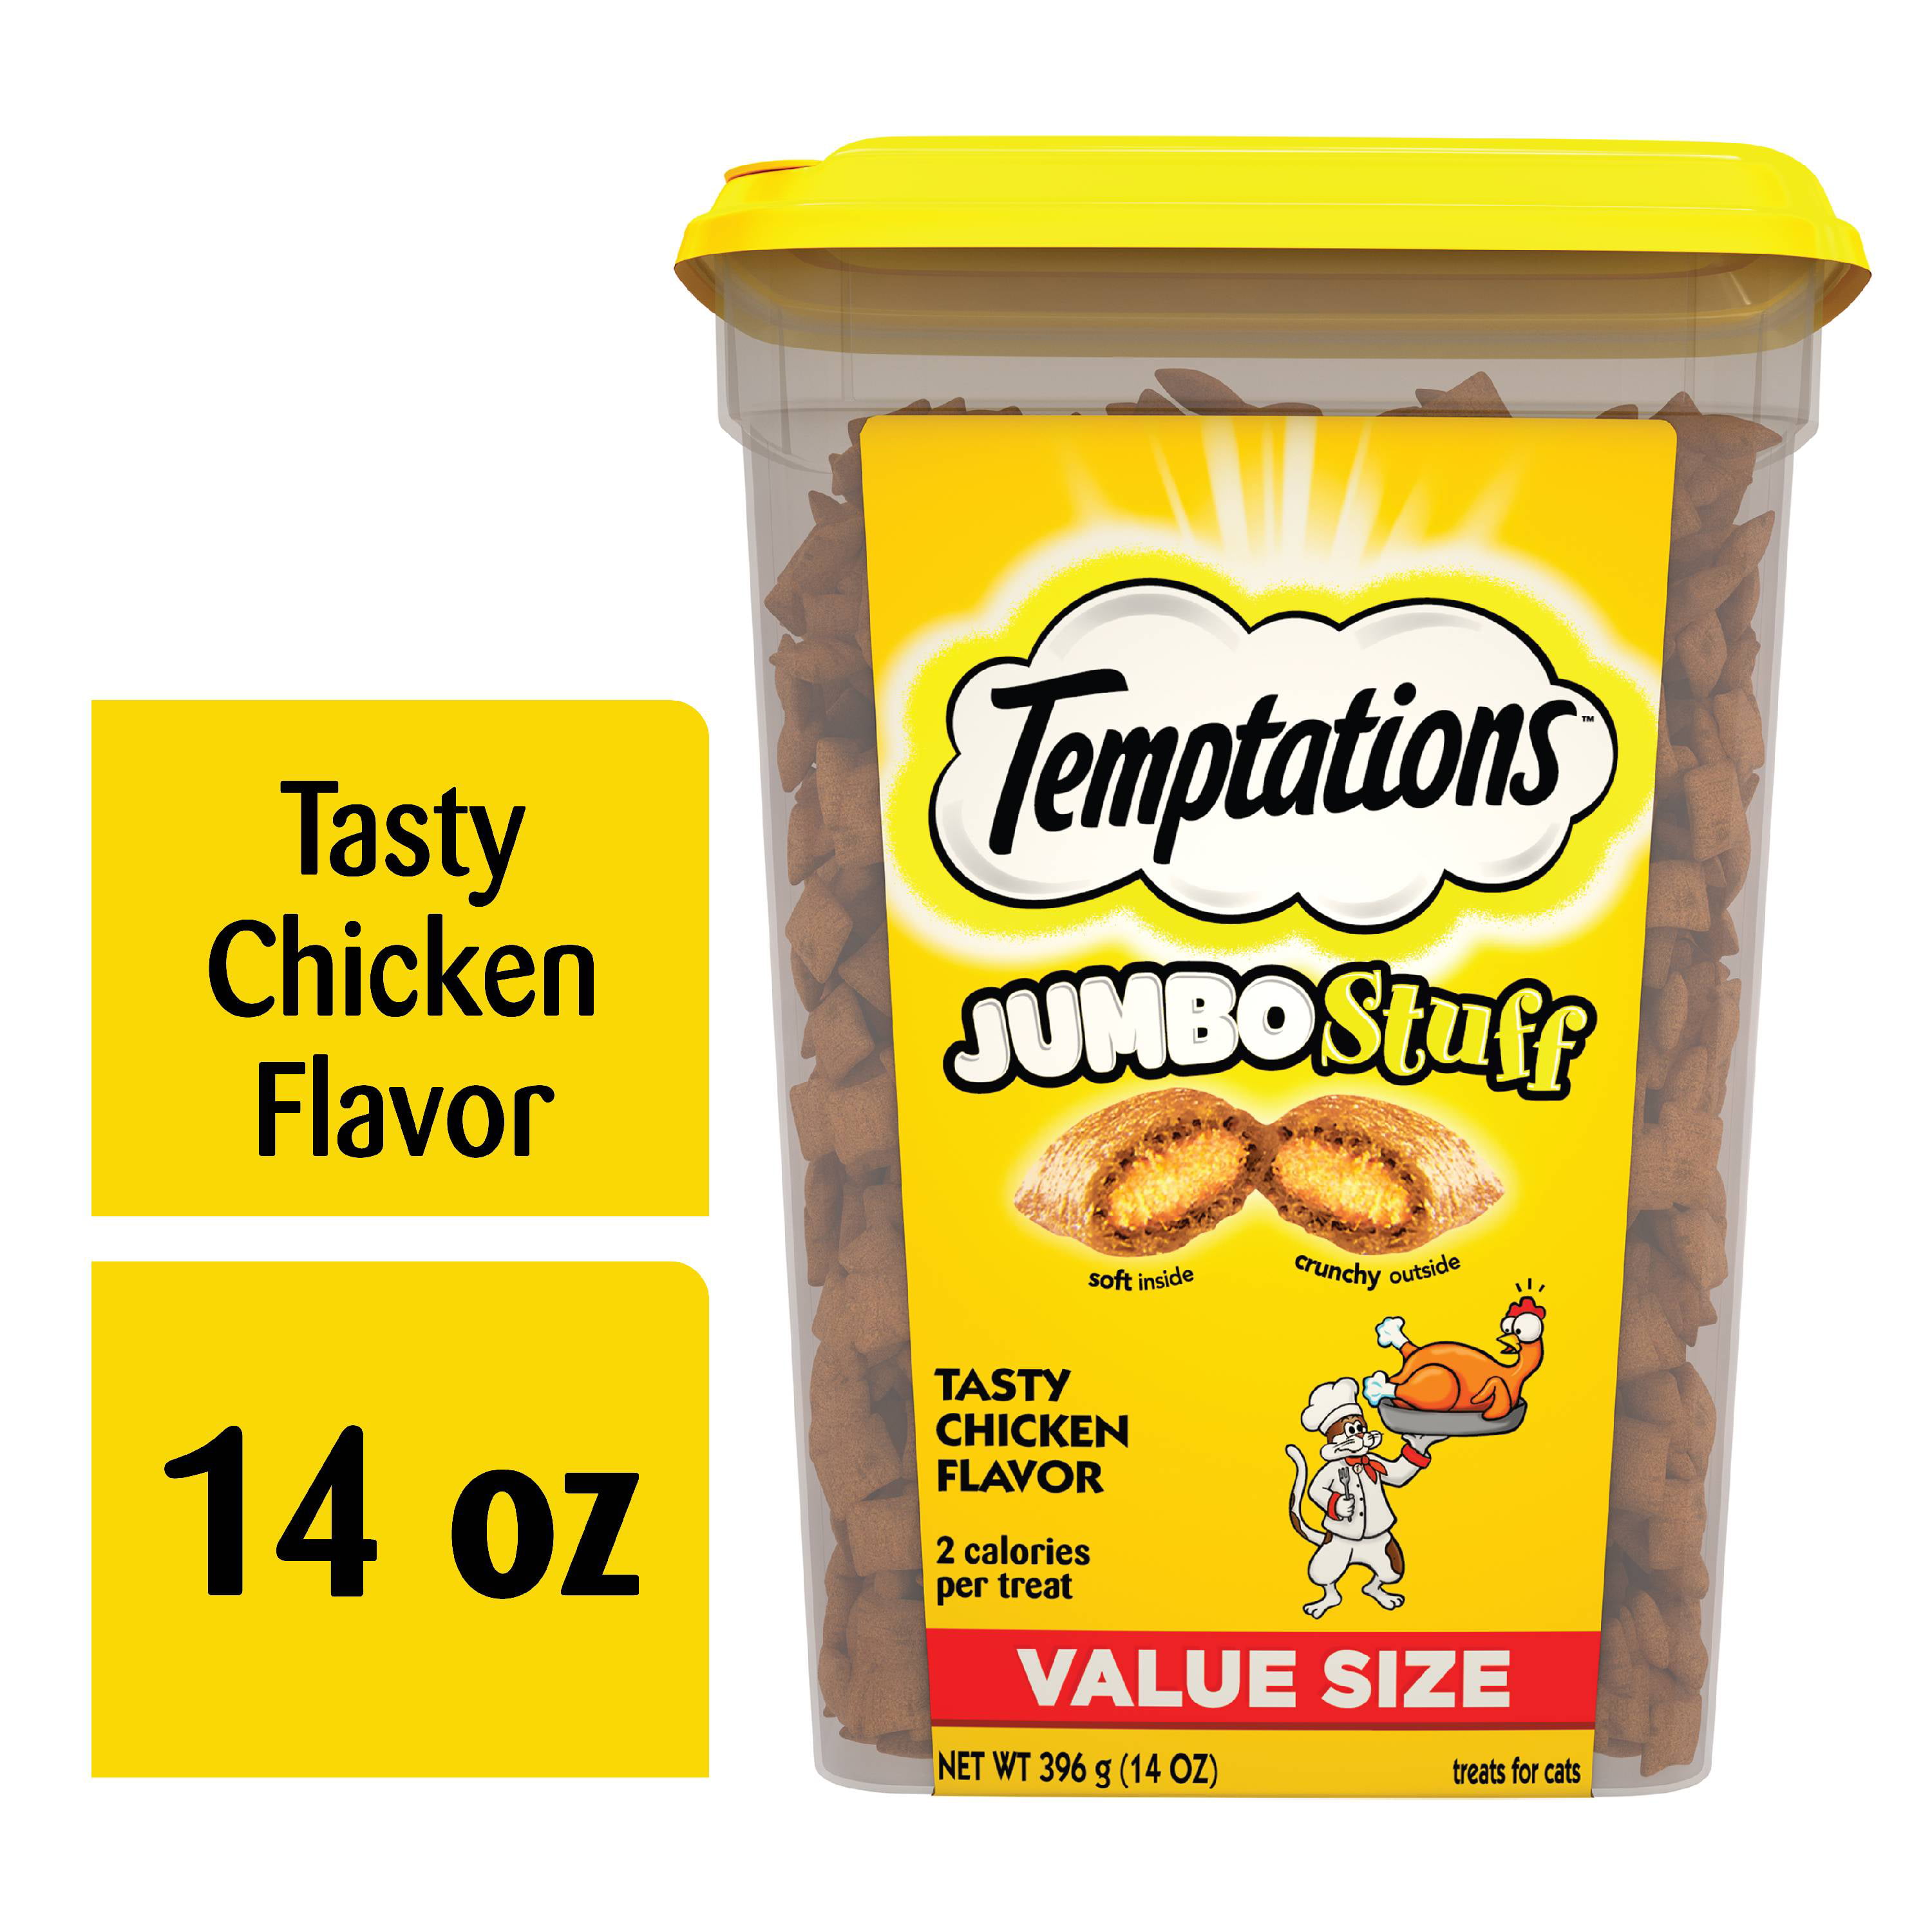 TEMPTATIONS JUMBO Stuff Cat Treats, Tasty Chicken Flavor, 14 oz. Tub